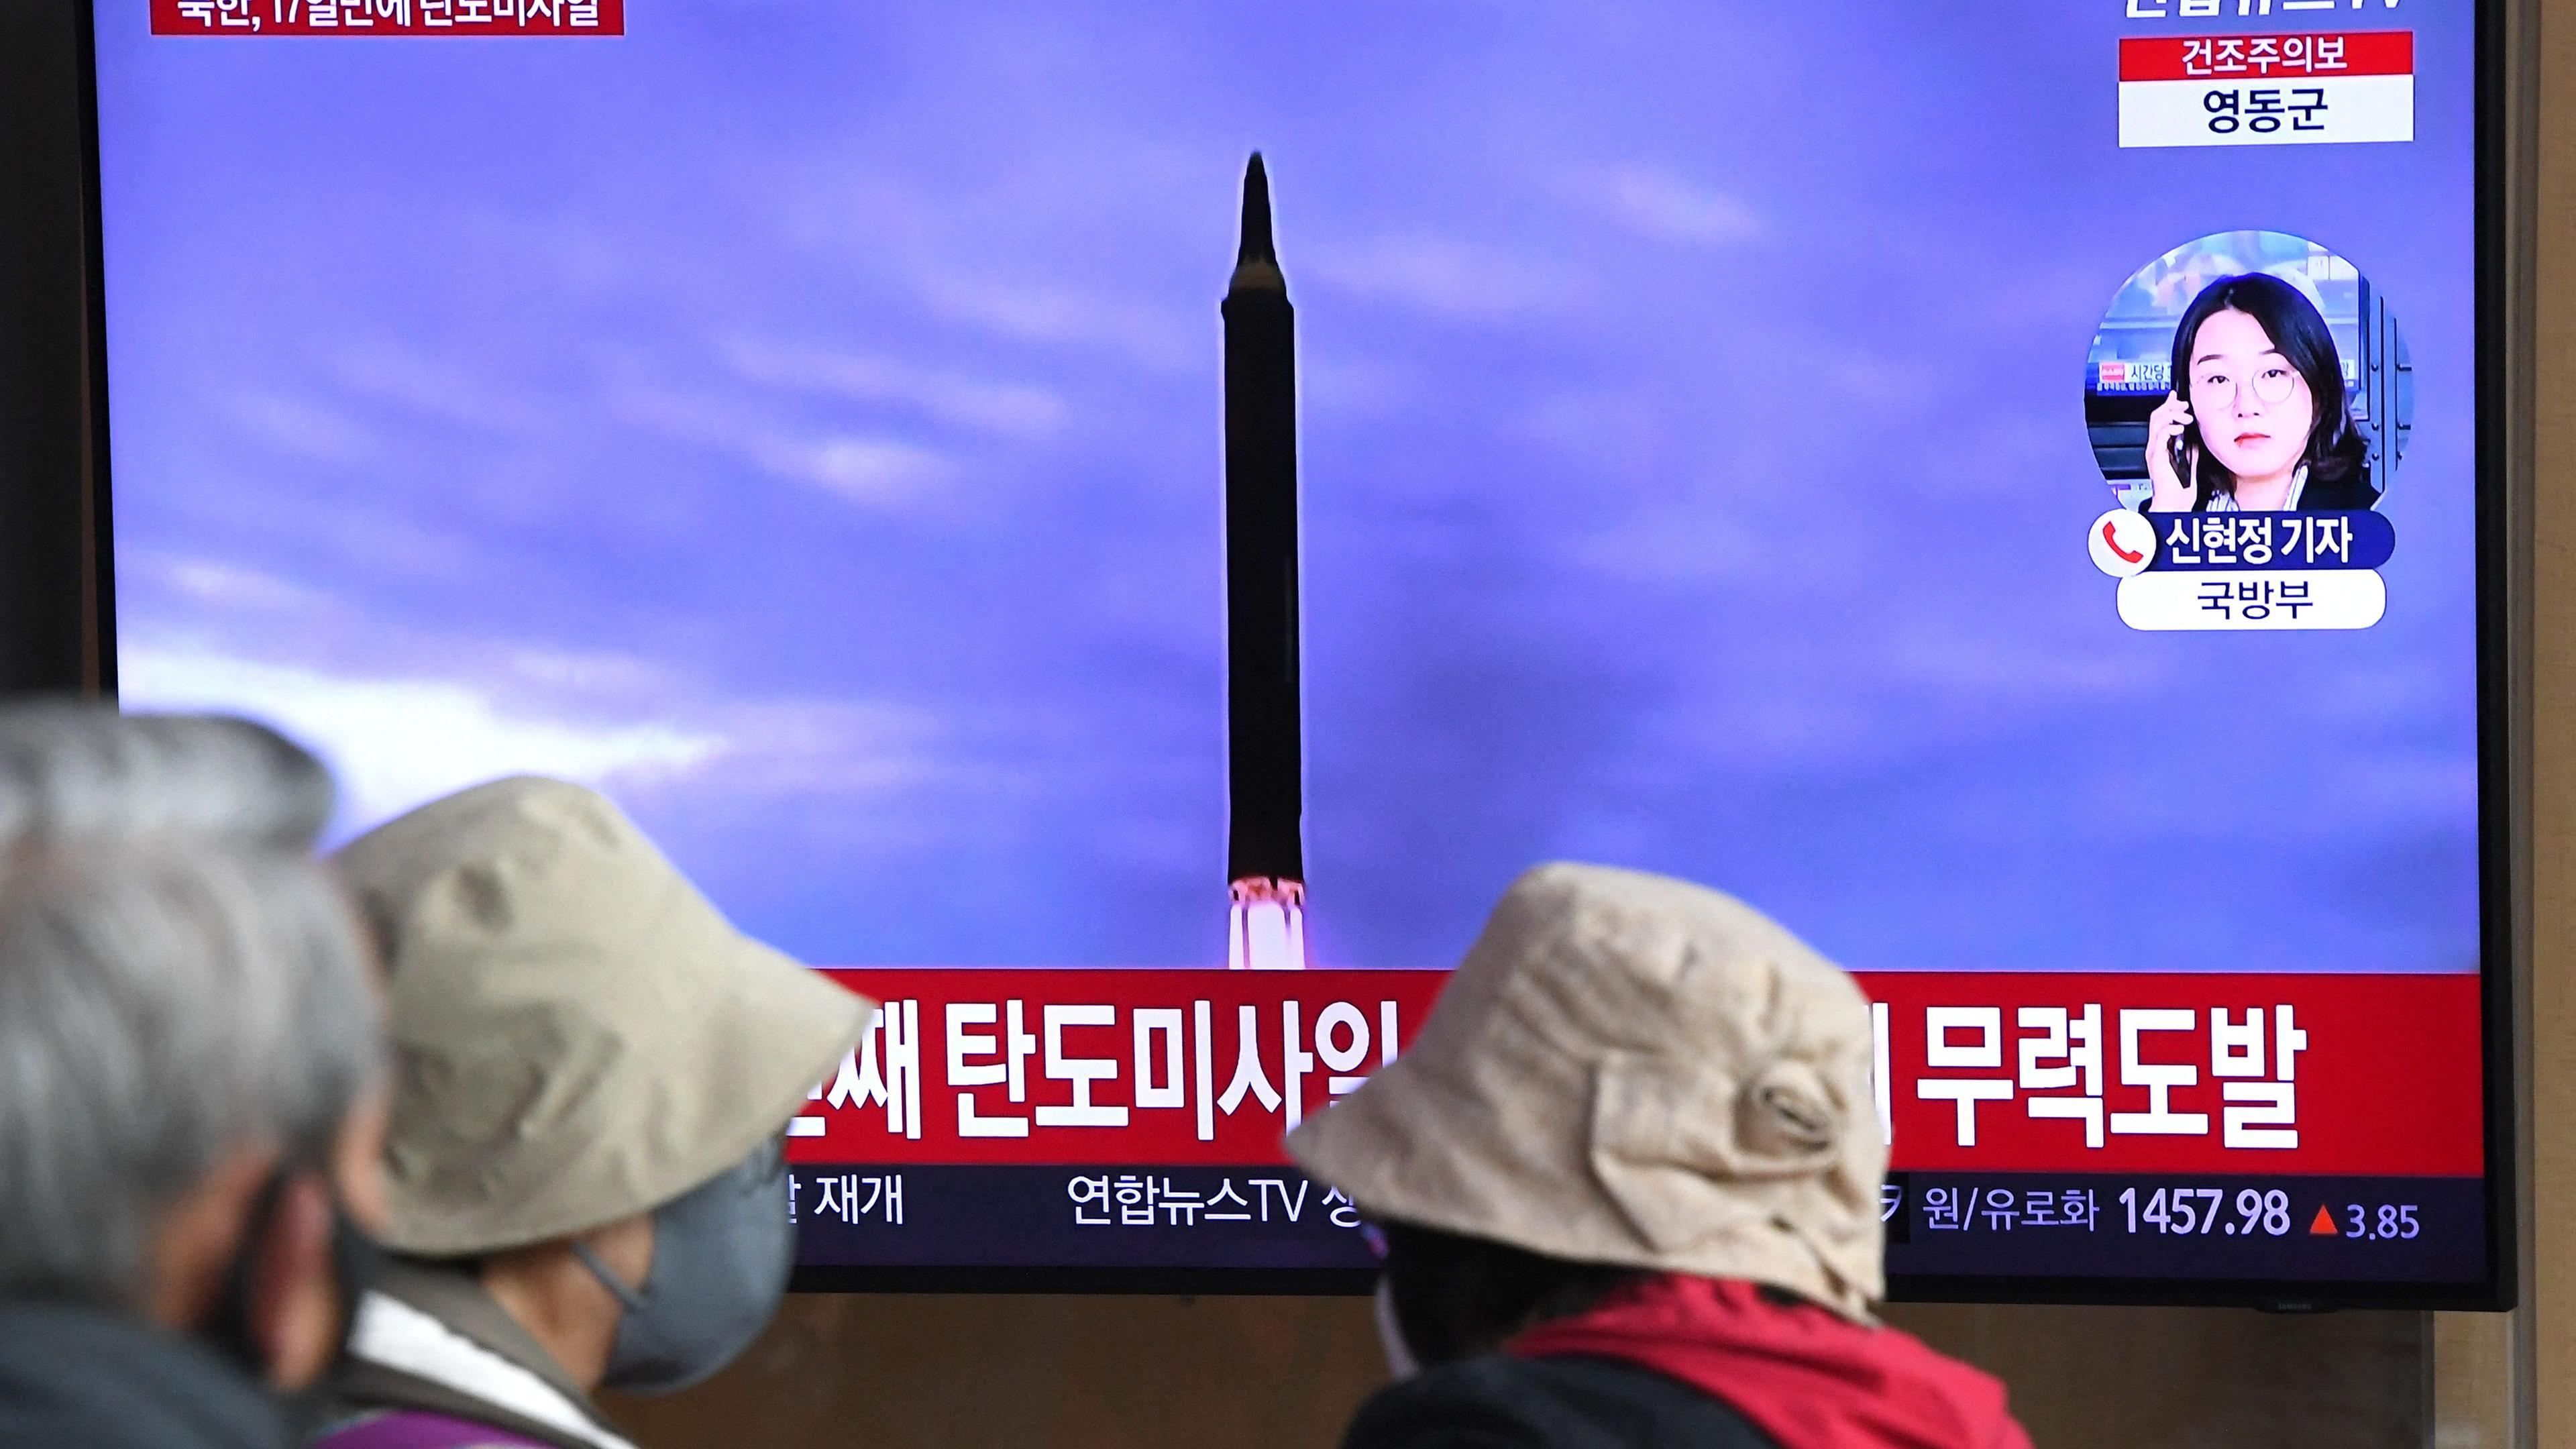 Fernsehübertragung eines nordkoreanischen Raketentests in Südkoreas Hauptstadt Seoul.